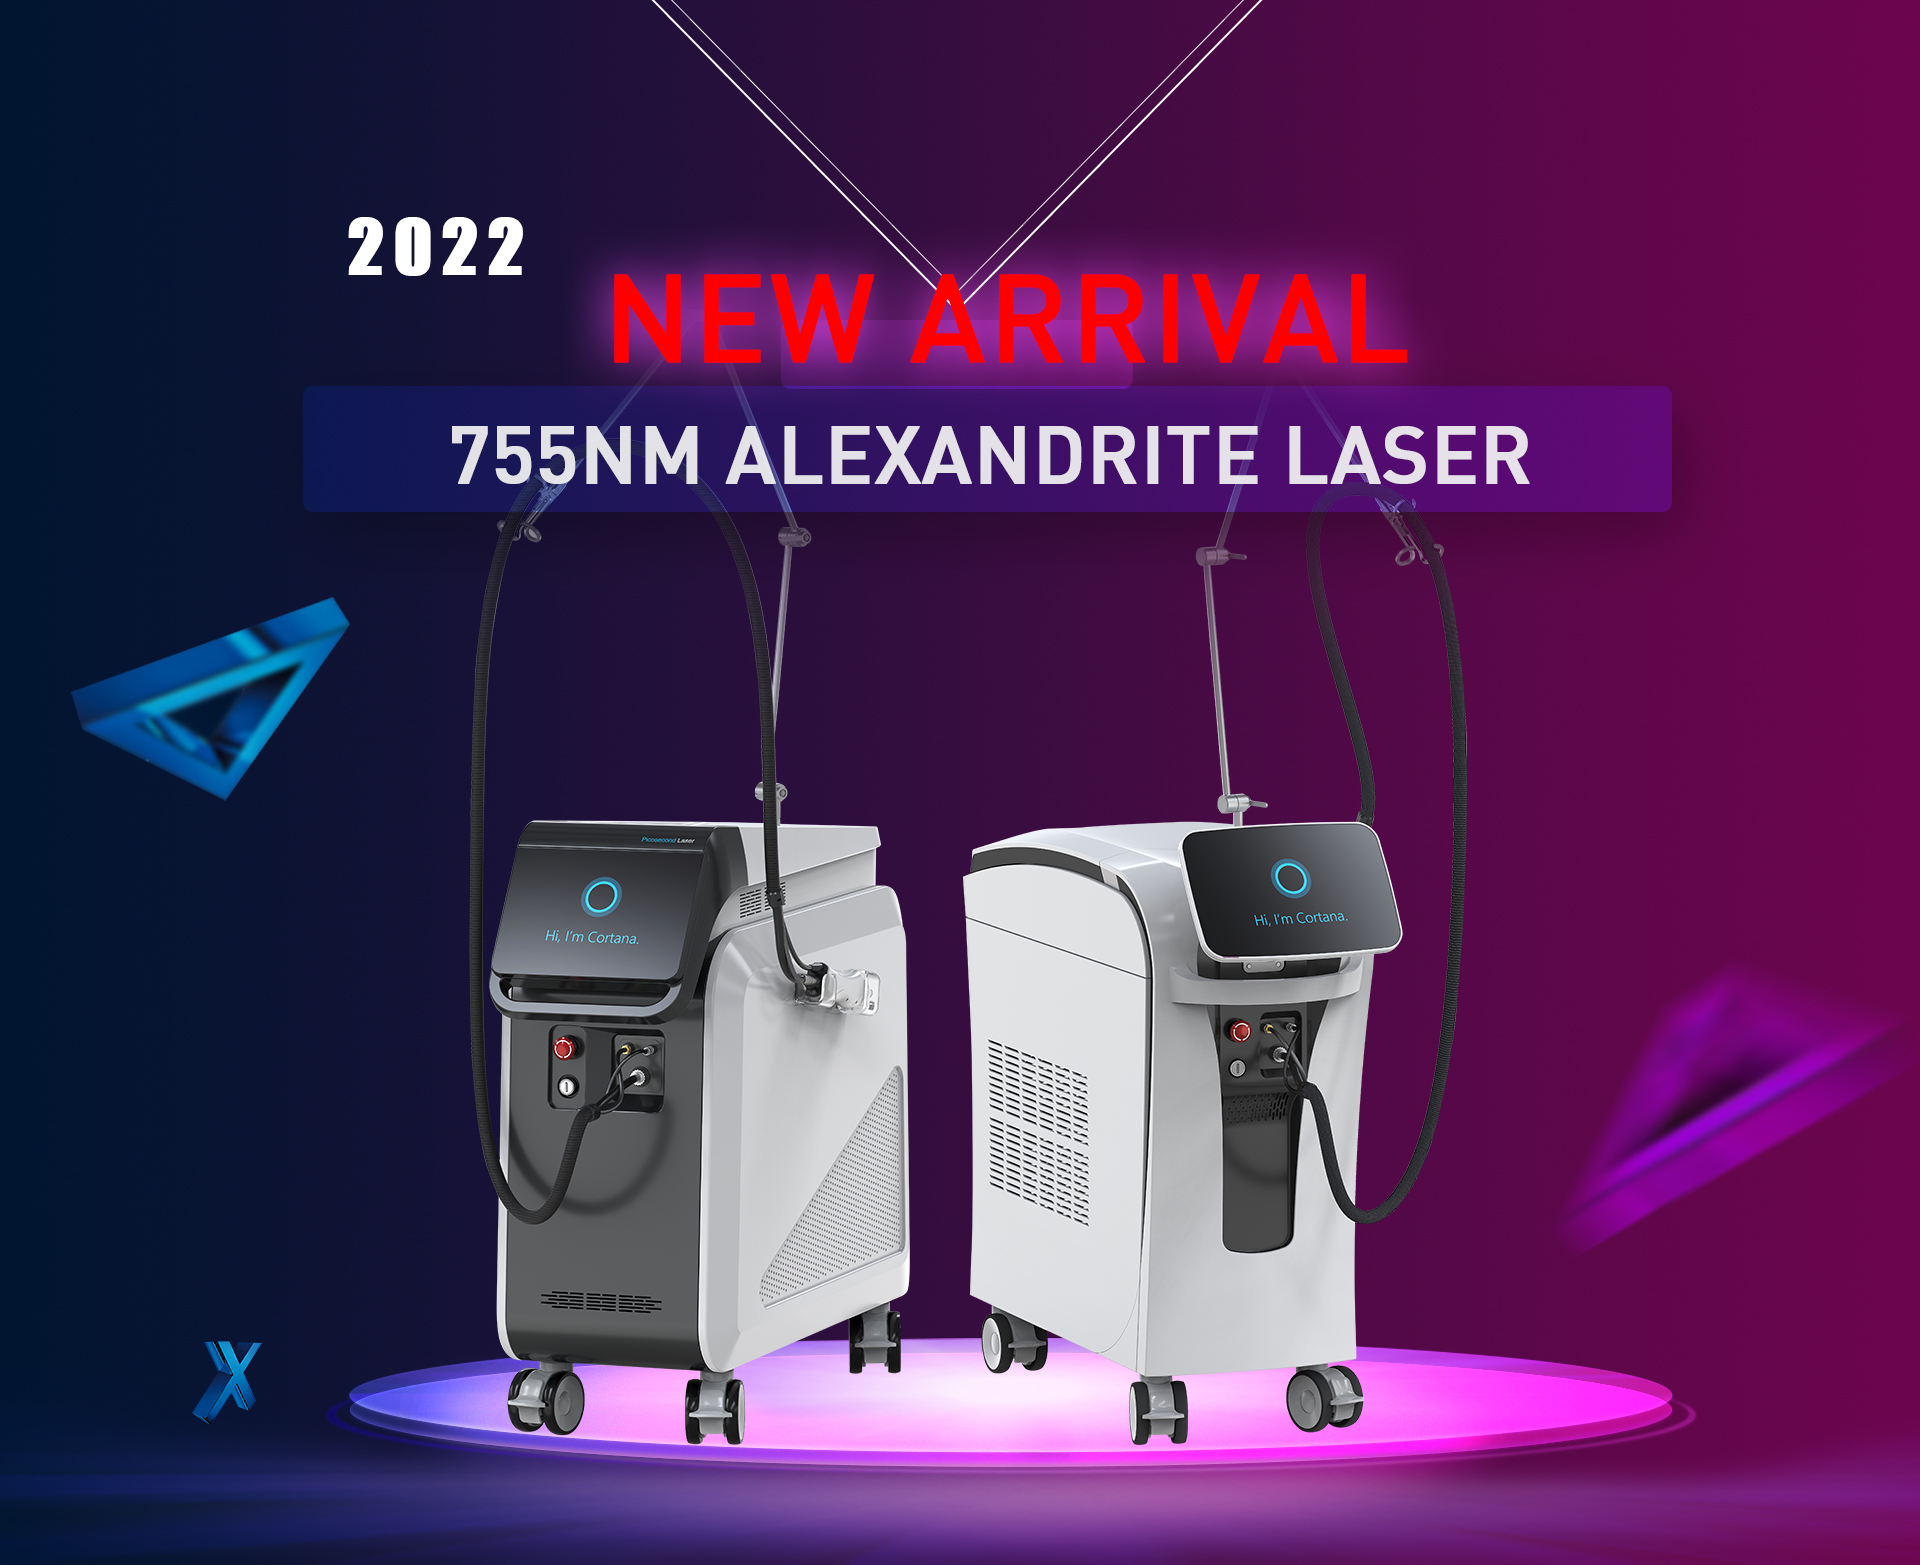 Zwei Arten von neuen 755-nm-Alexandrit-Lasermaschinen auf den Markt gebracht